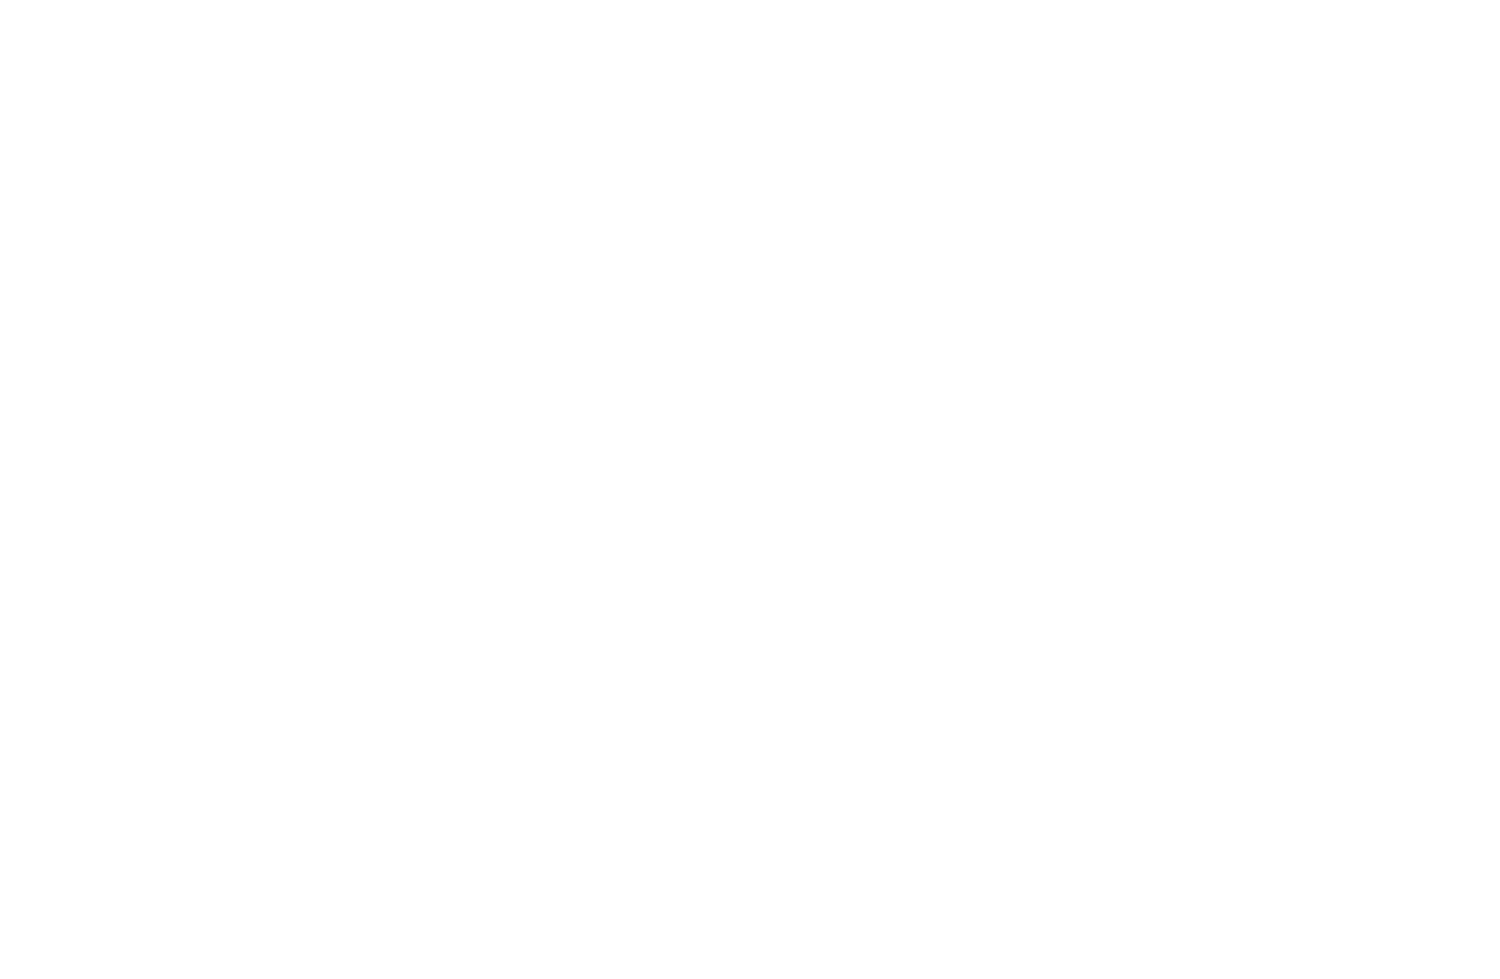 Apidura - White Logo